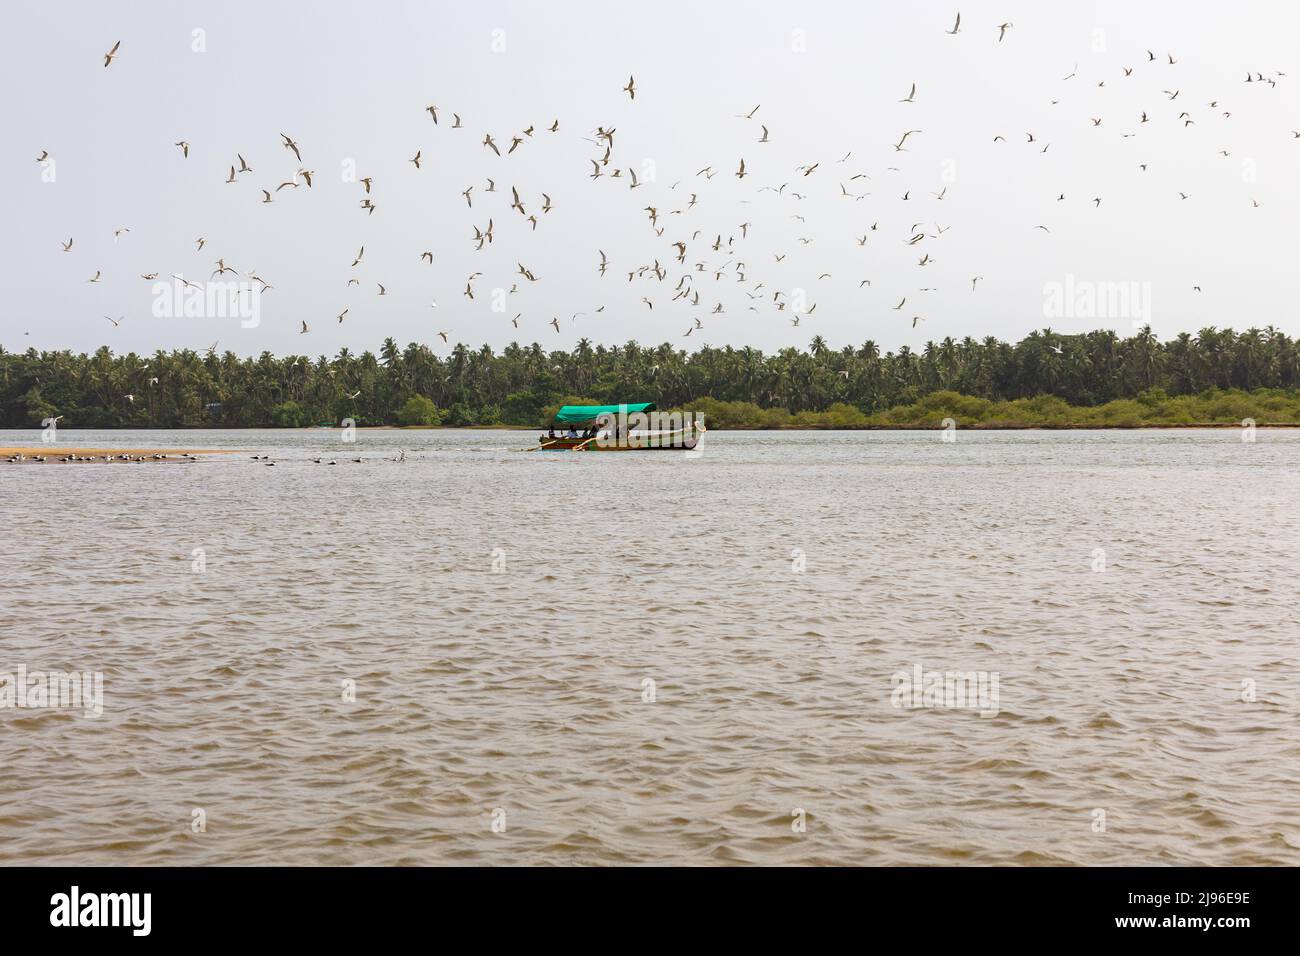 Troupeau de la rivière Terns ( Sterna aurantia ) volant sur un bateau transportant des touristes sur la rivière Karli Banque D'Images